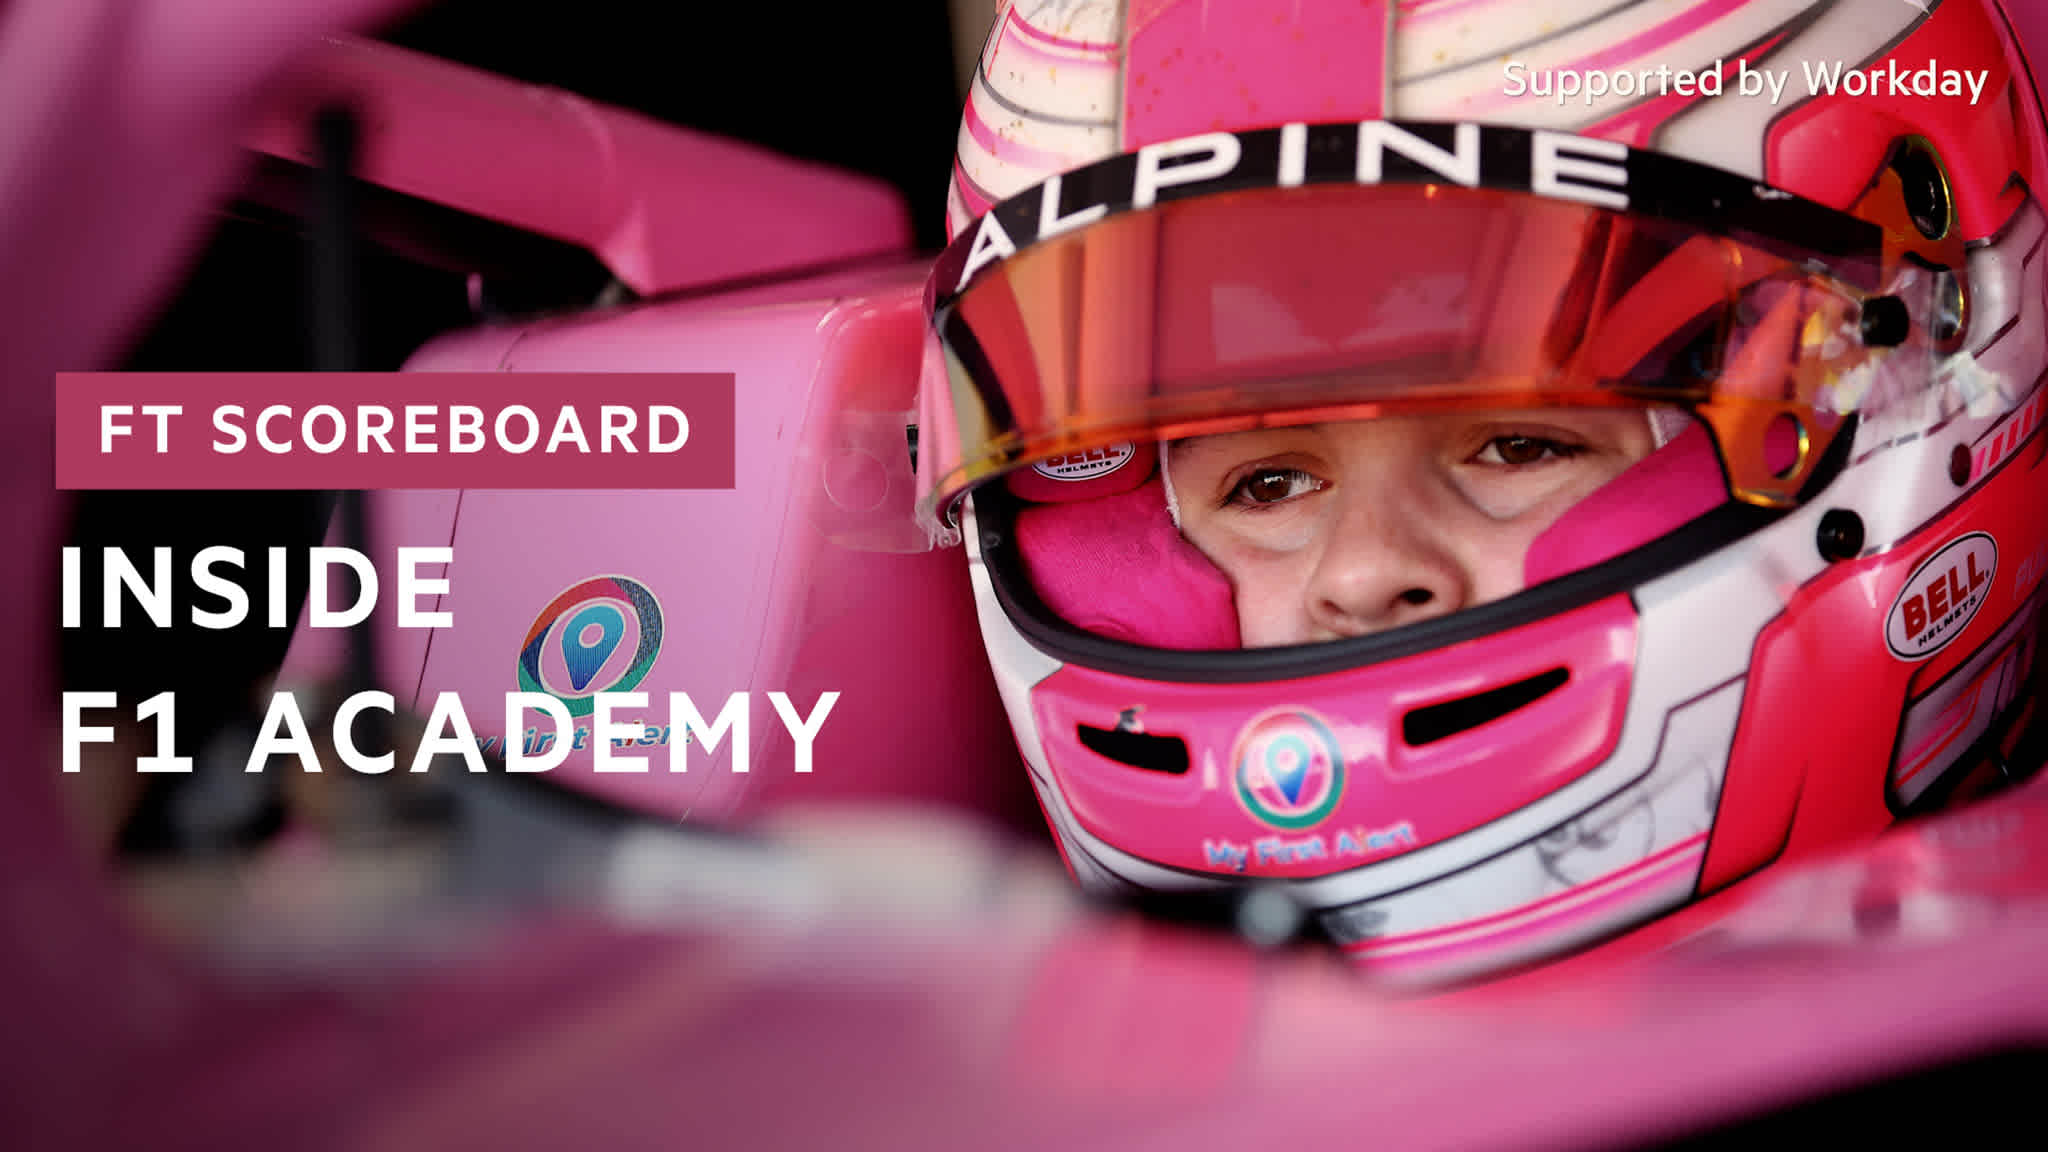 FT Scoreboard Inside F1 Academy